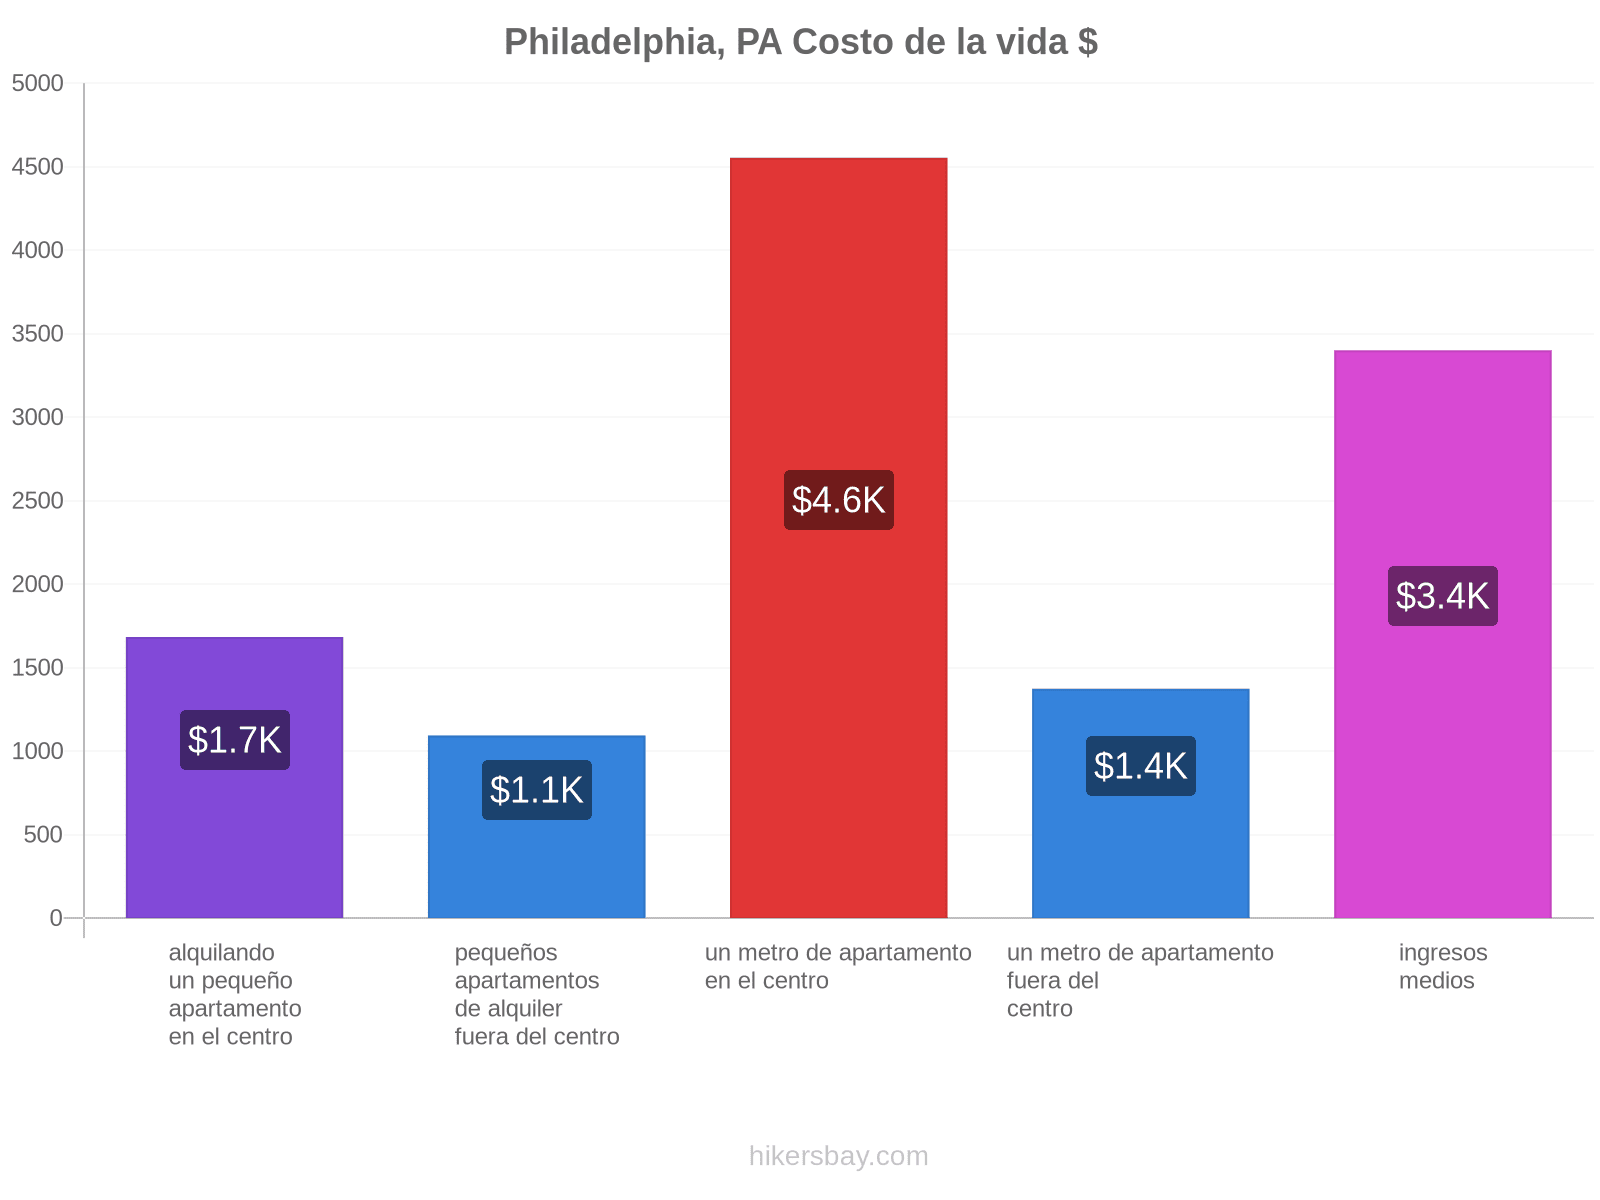 Philadelphia, PA costo de la vida hikersbay.com